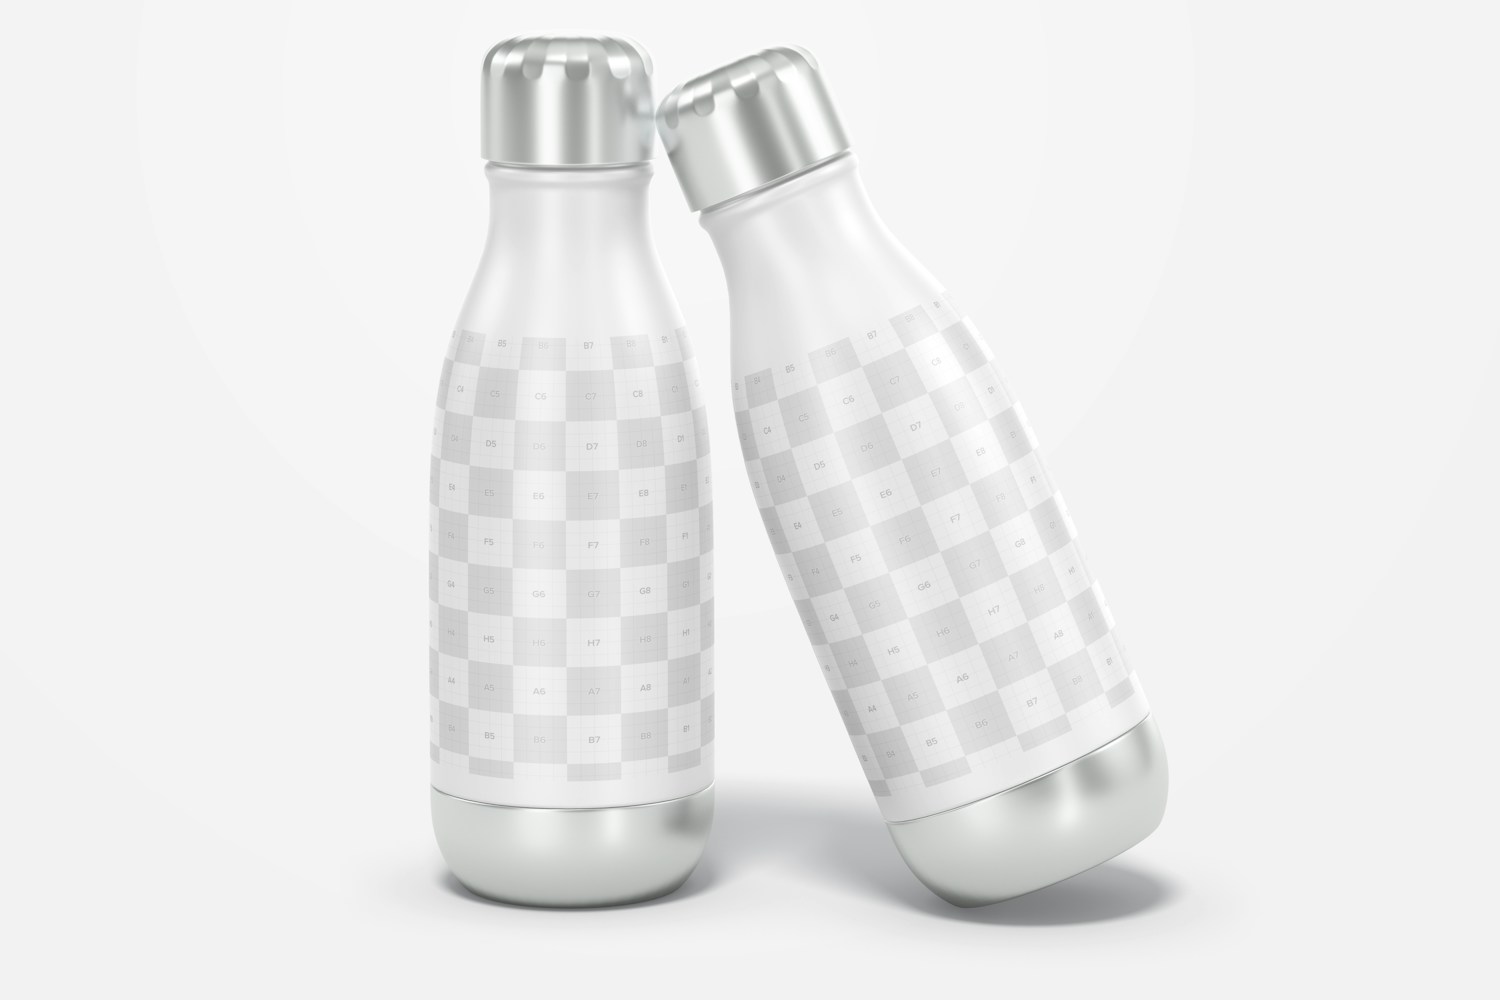 17 oz Metallic Water Bottles Mockup, Front View